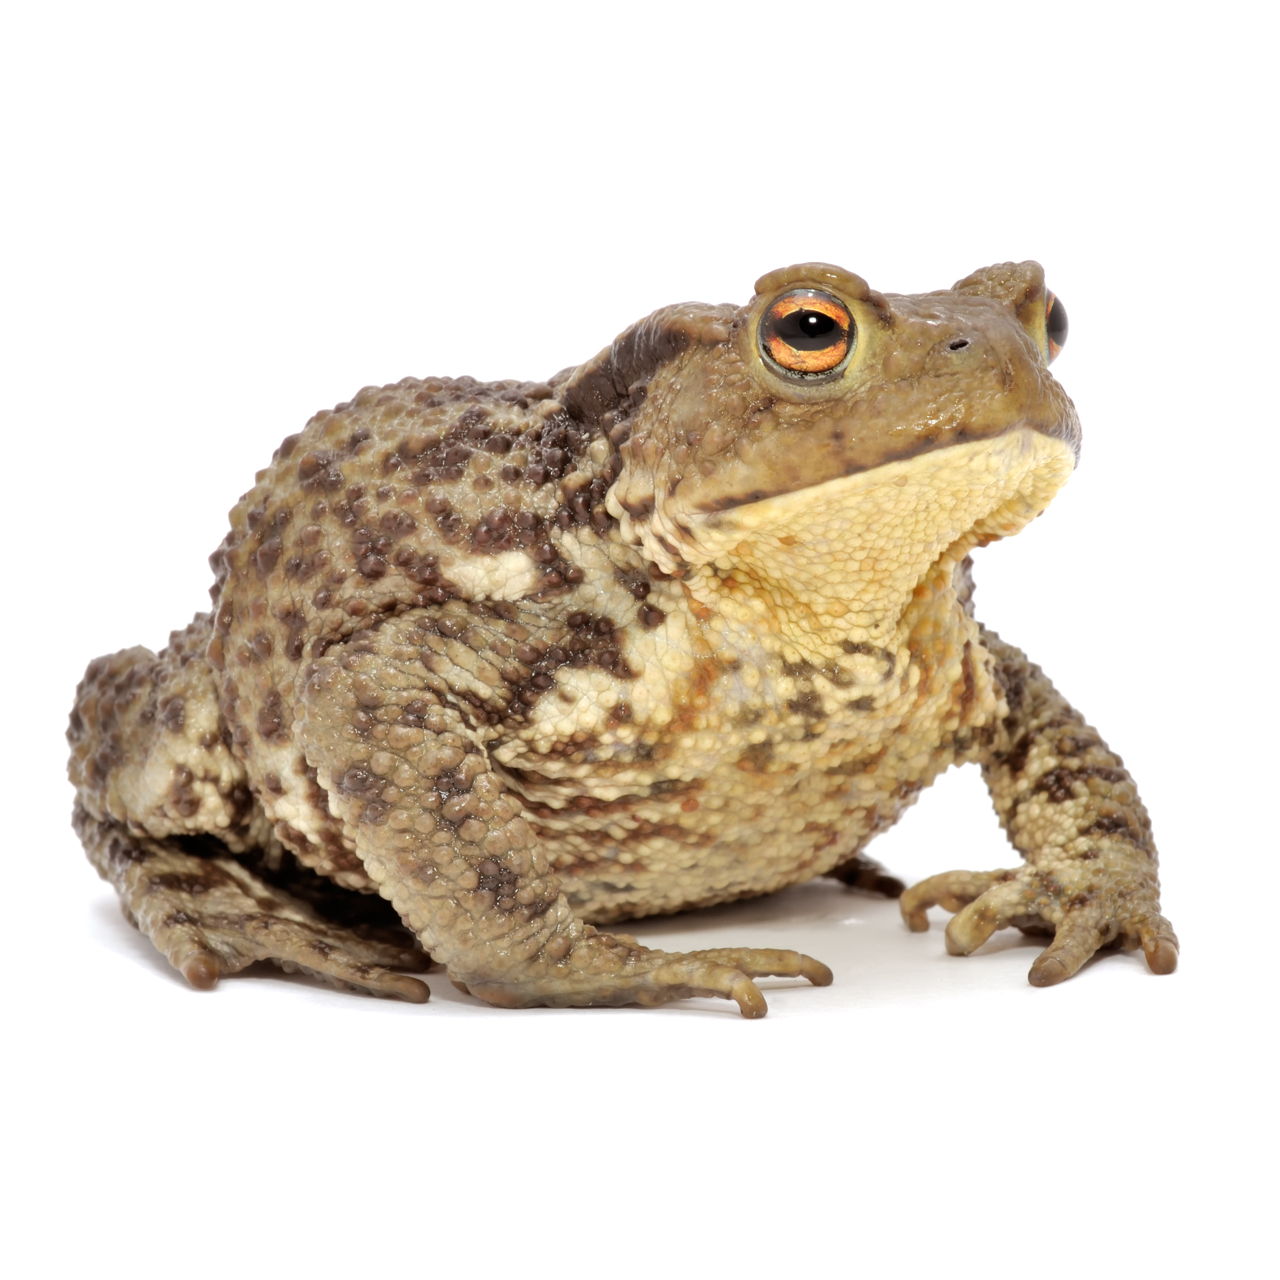 青蛙草蛙 库存图片. 图片 包括有 青蛙, 生态学, 被截肢者, 环境, 公用, 上涨, 森林, 观察, 蛙属 - 40660761